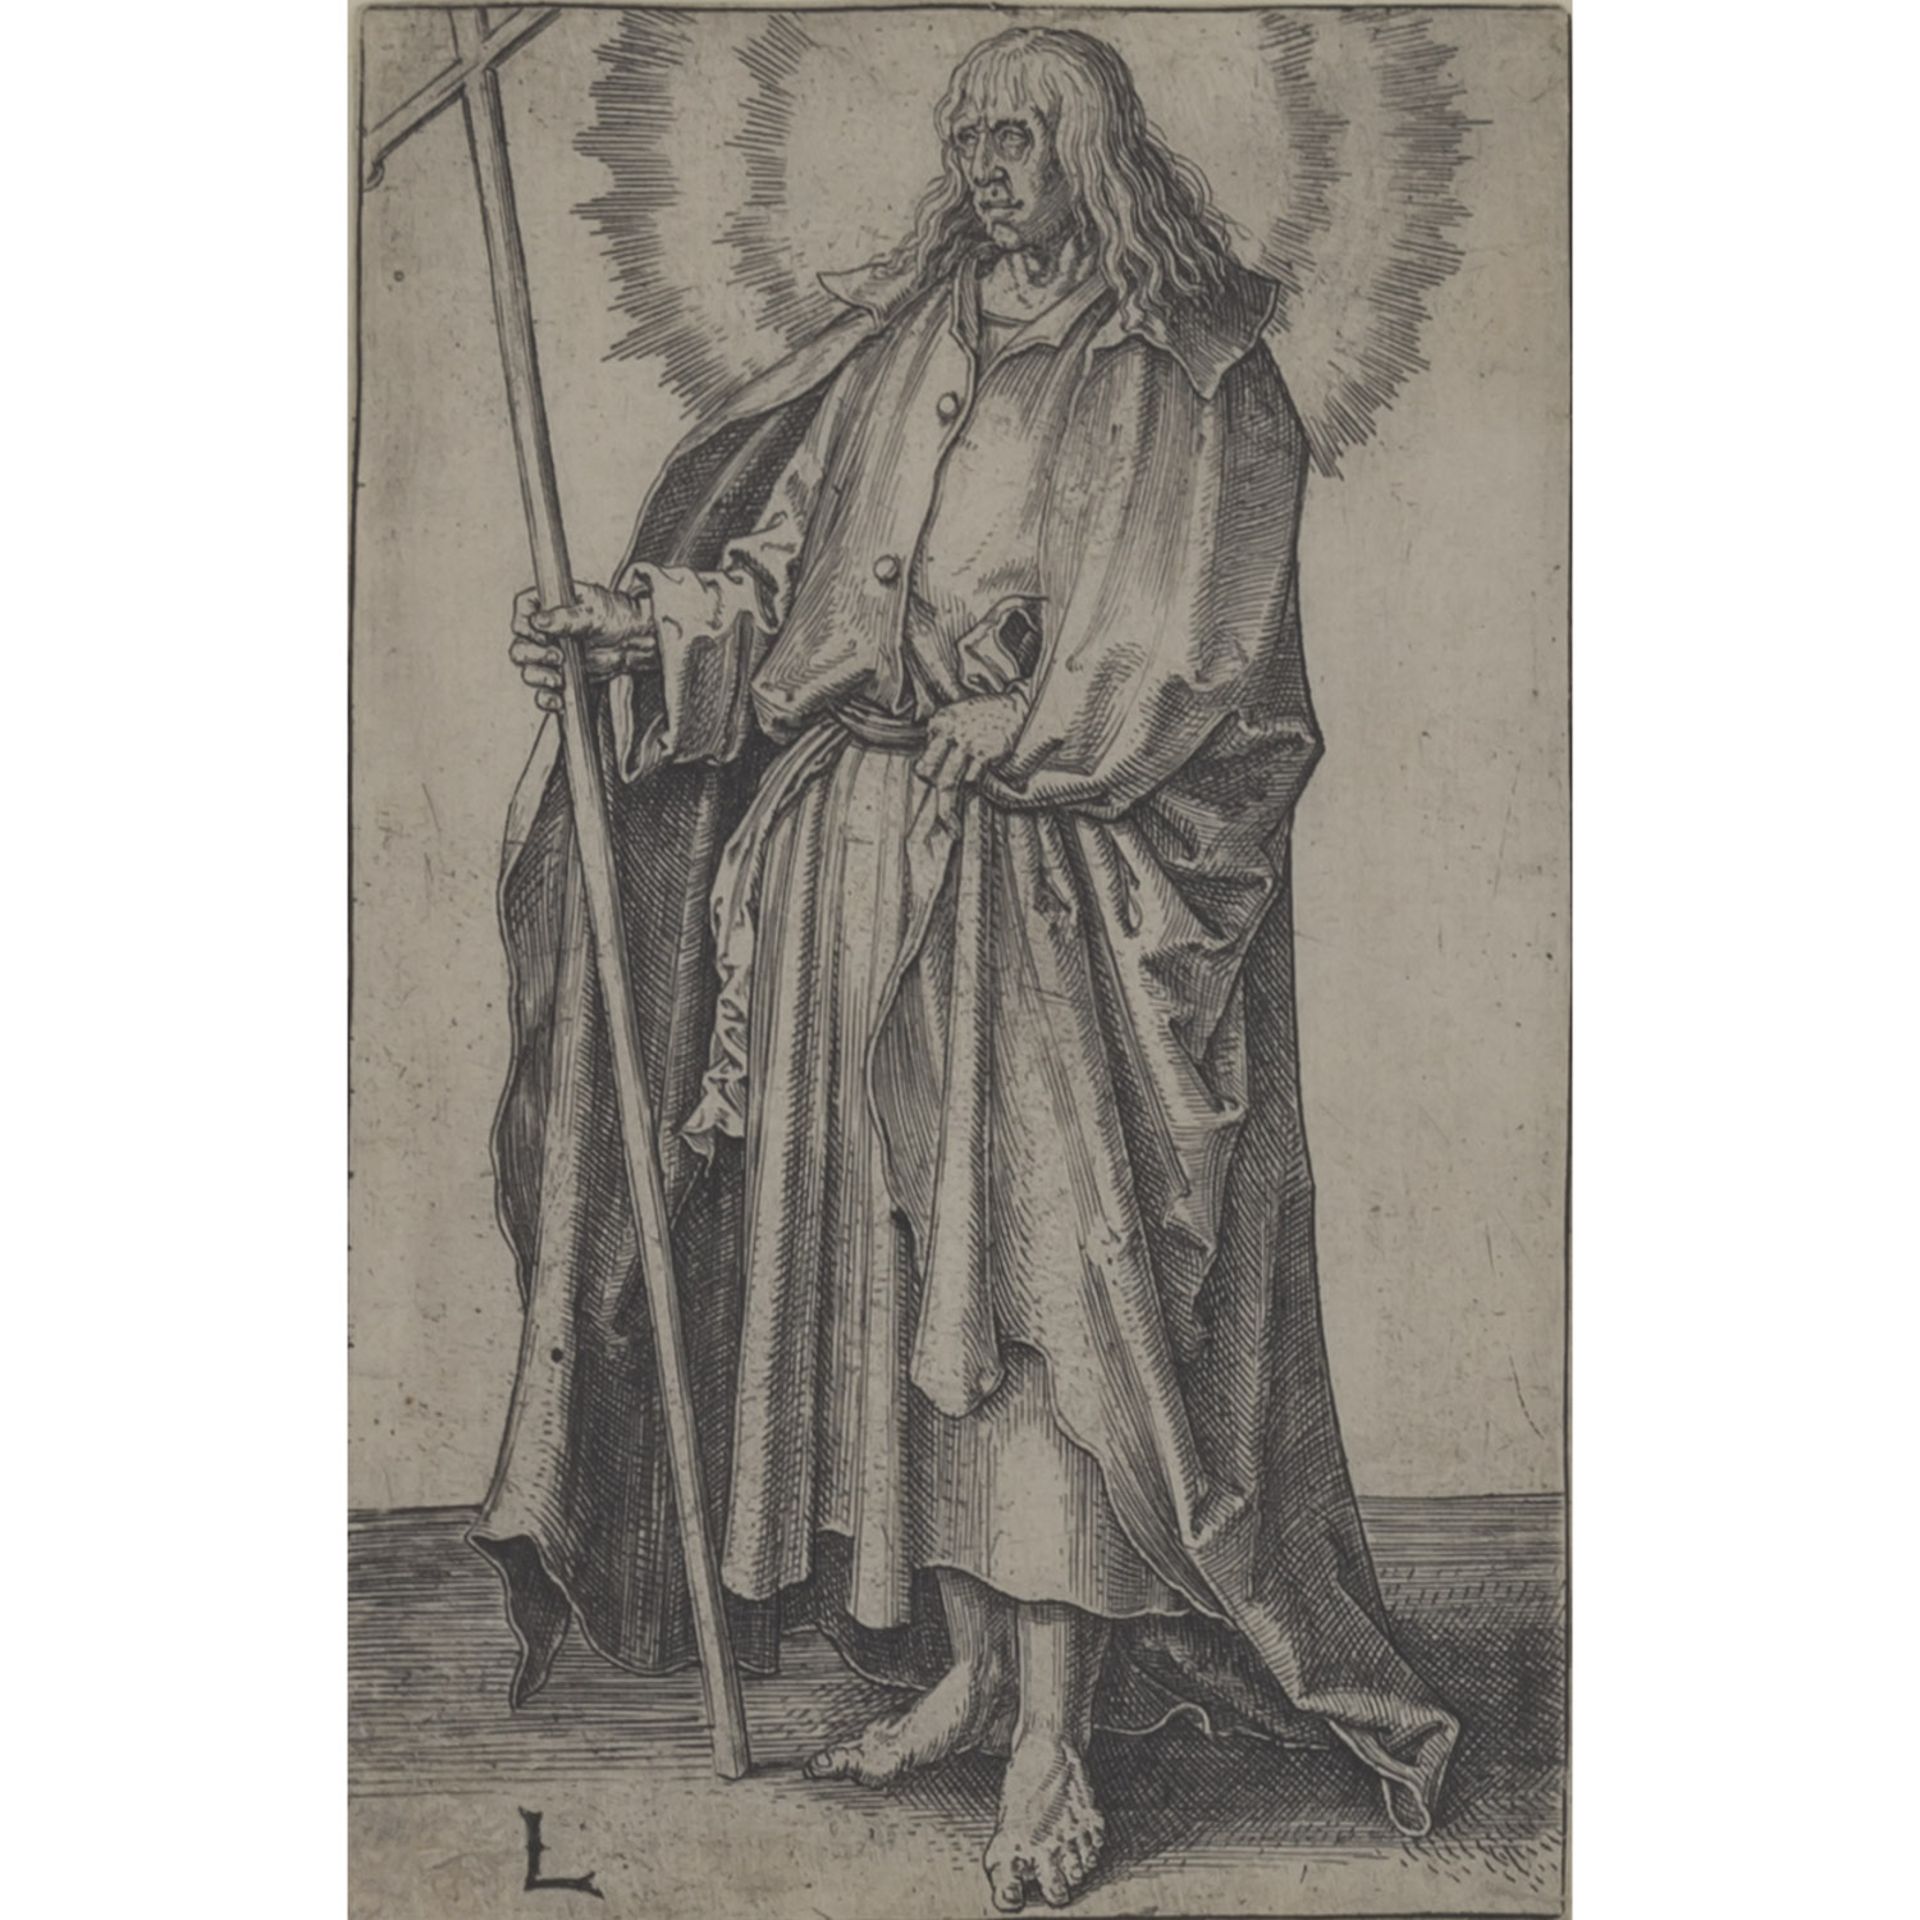 LEYDEN, LUKAS VAN (1494-1533), "Apostel Philippus" aus der Apostelfolge, Kupferstich/Bütten, in der